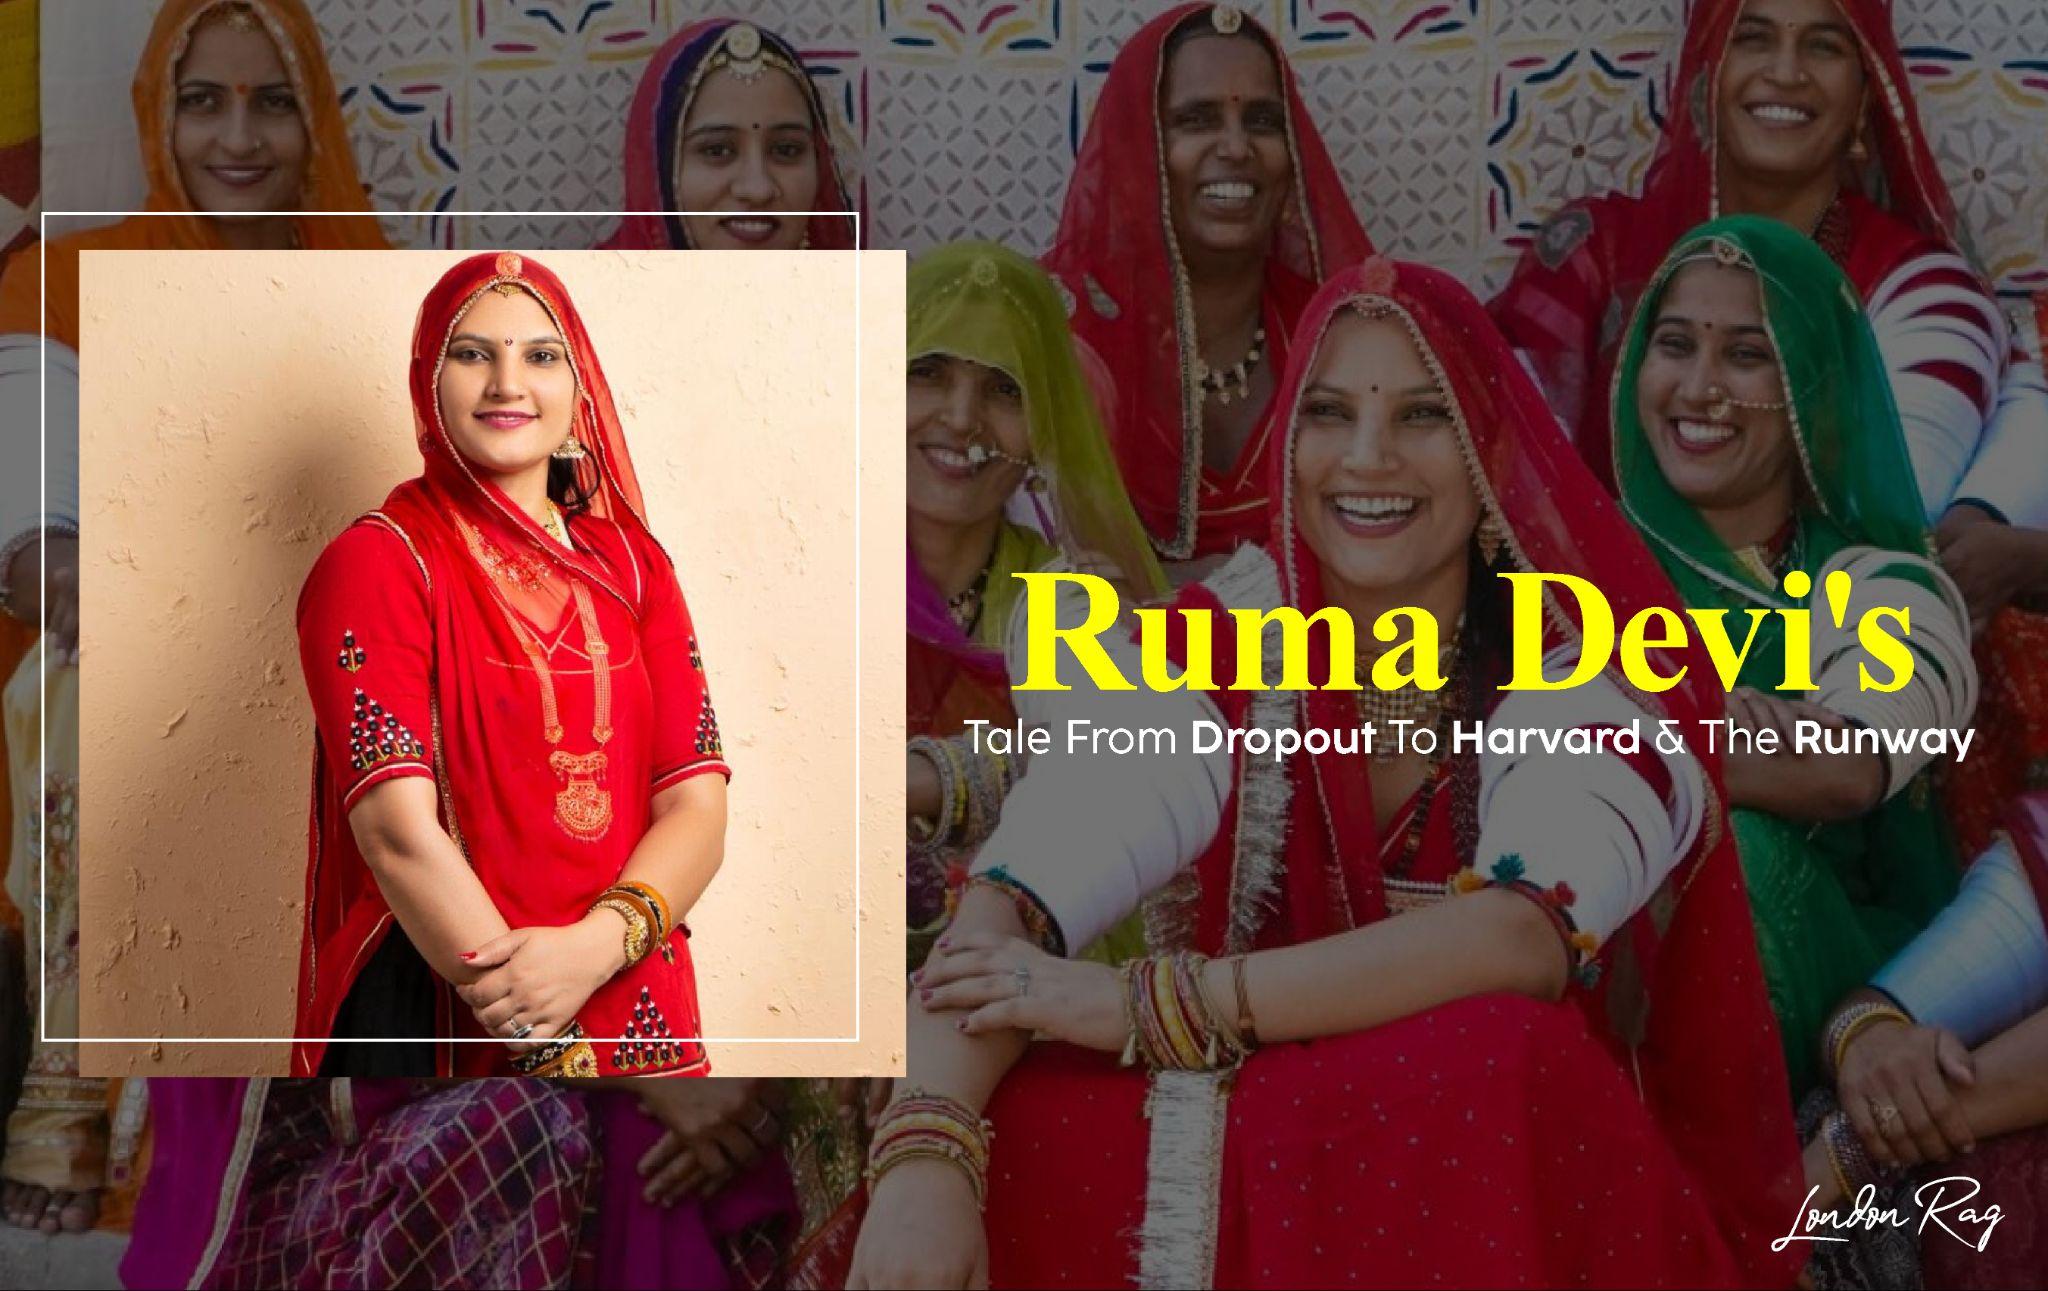 ความสำเร็จในการทอผ้า: เรื่องราวของ Ruma Devi จากการออกกลางคันไปฮาร์วาร์ดและรันเวย์